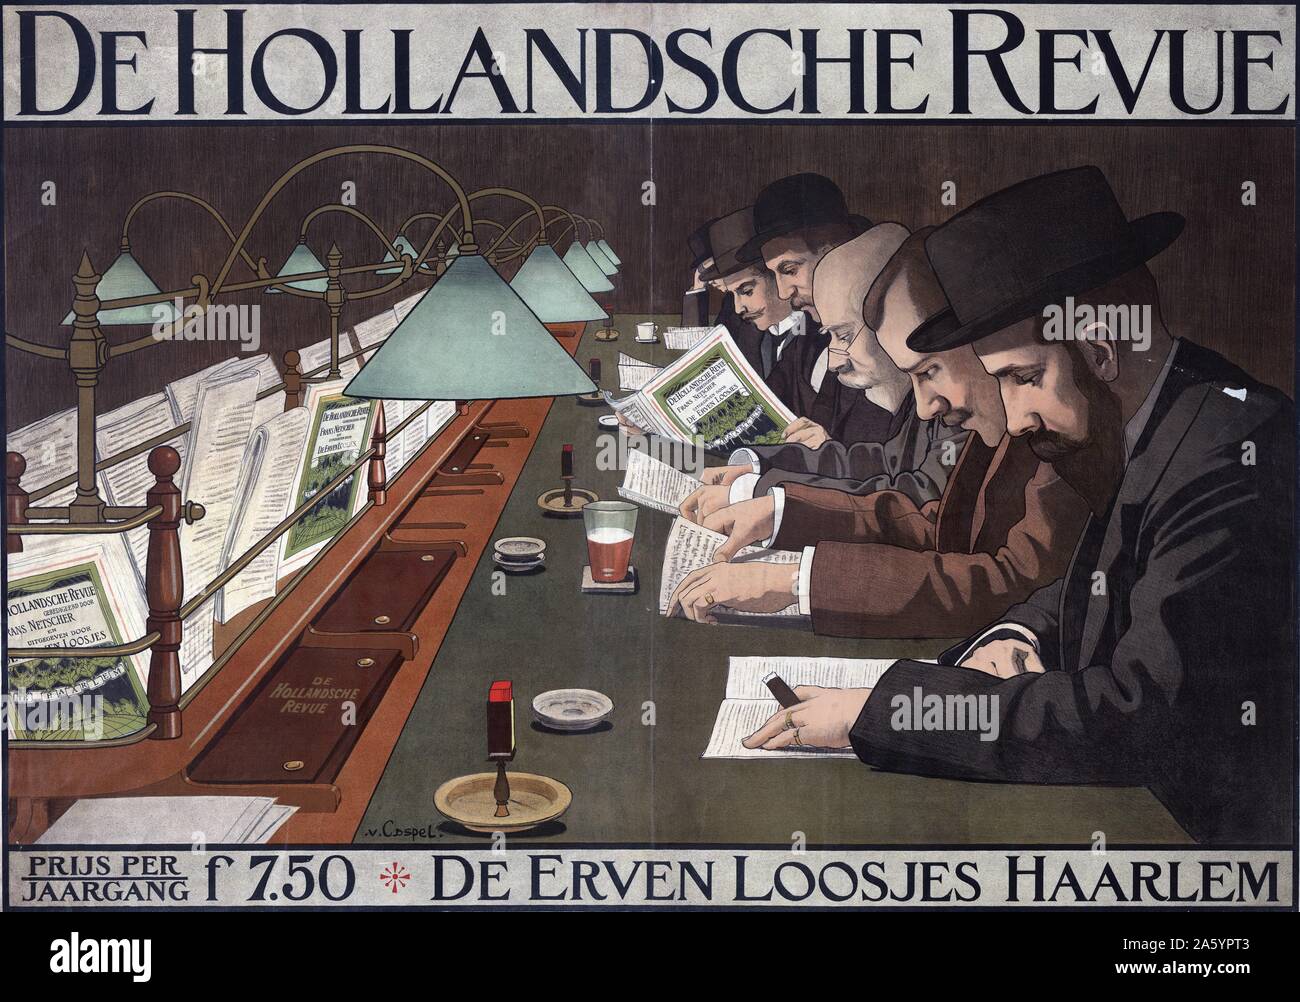 Werbung für den niederländischen Zeitschrift "De Hollandsche Revue", zeigt eine Gruppe von Männern, die eine Bibliothek Tisch verschiedene Texte zu lesen. Stockfoto